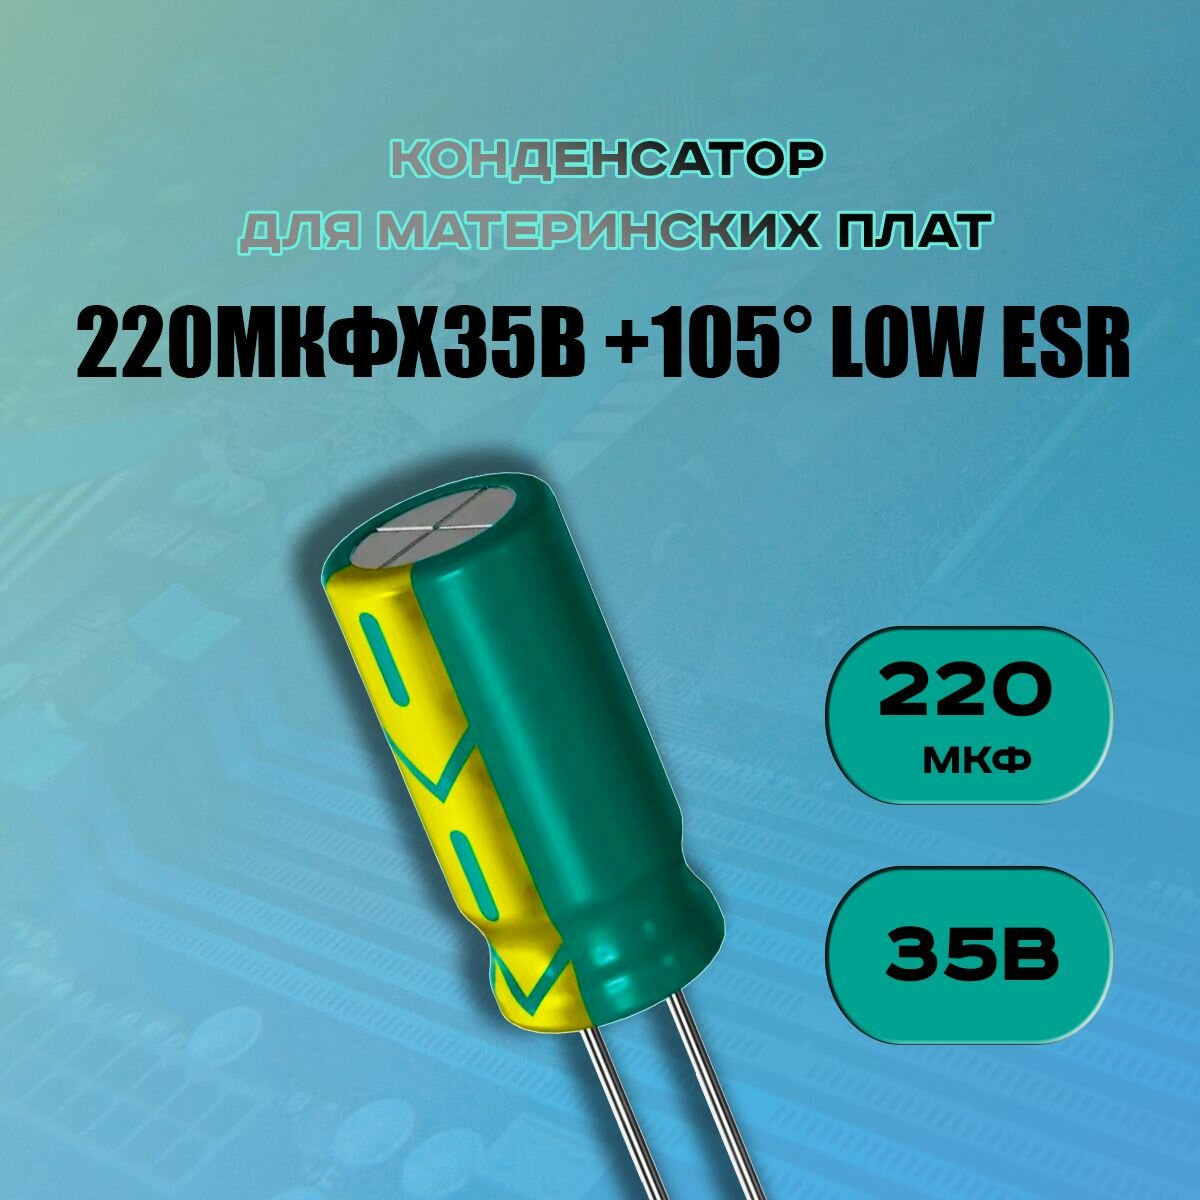 Конденсатор для материнской платы 220 микрофарат 35 Вольт (220uf 35V WL +105 LOW ESR) - 1 шт.